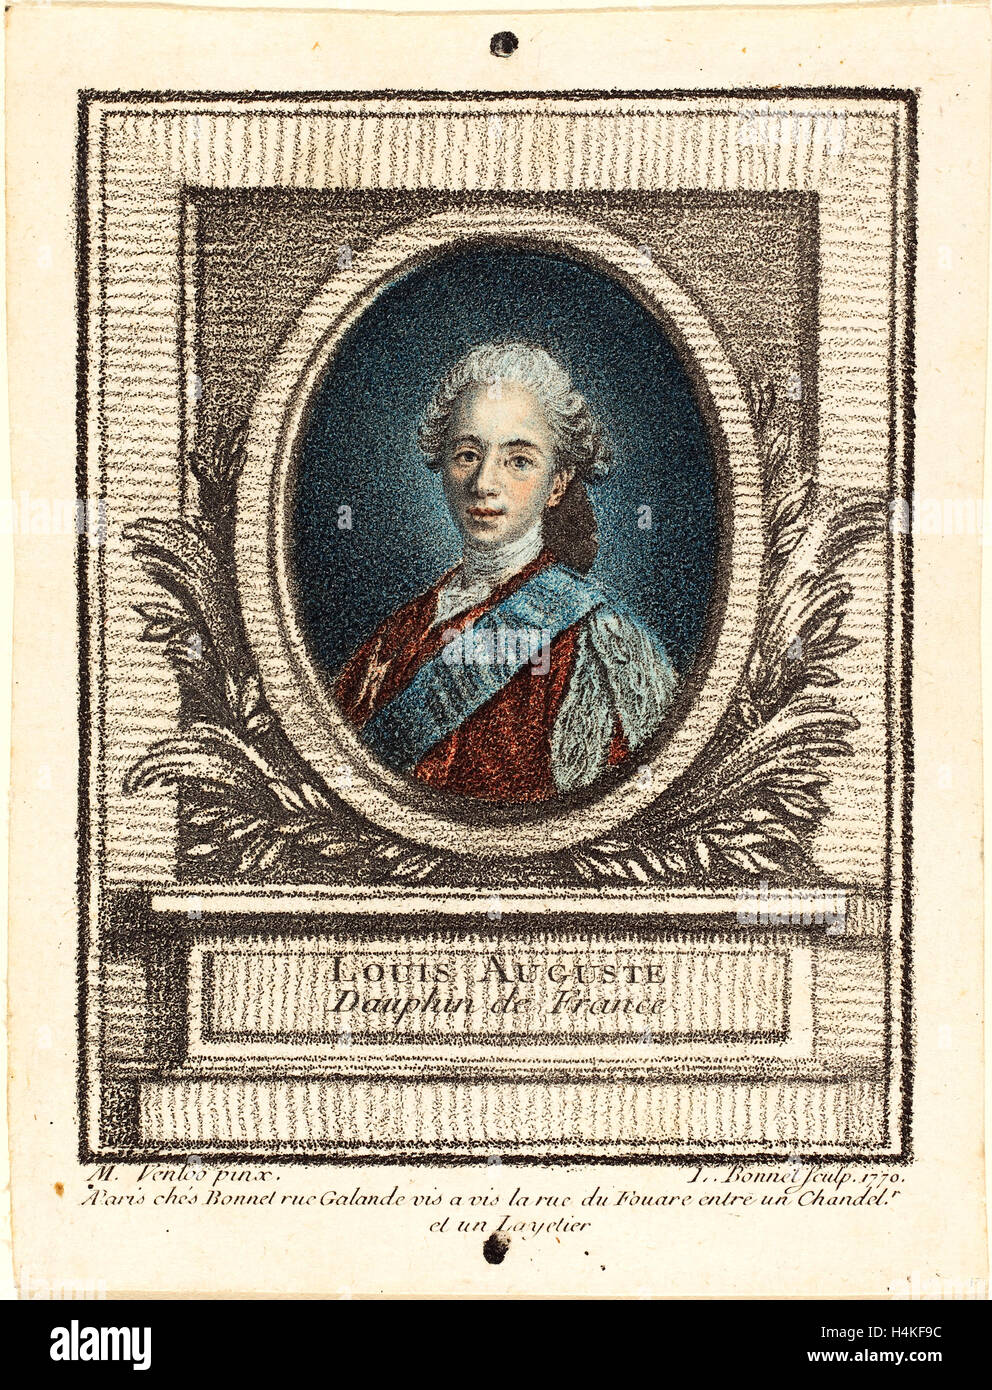 Louis-Marin Bonnet après Louis Michel Van Loo, français (1736-1793), Louis-Auguste, dauphin de France, 1770, le crayon-mode Banque D'Images